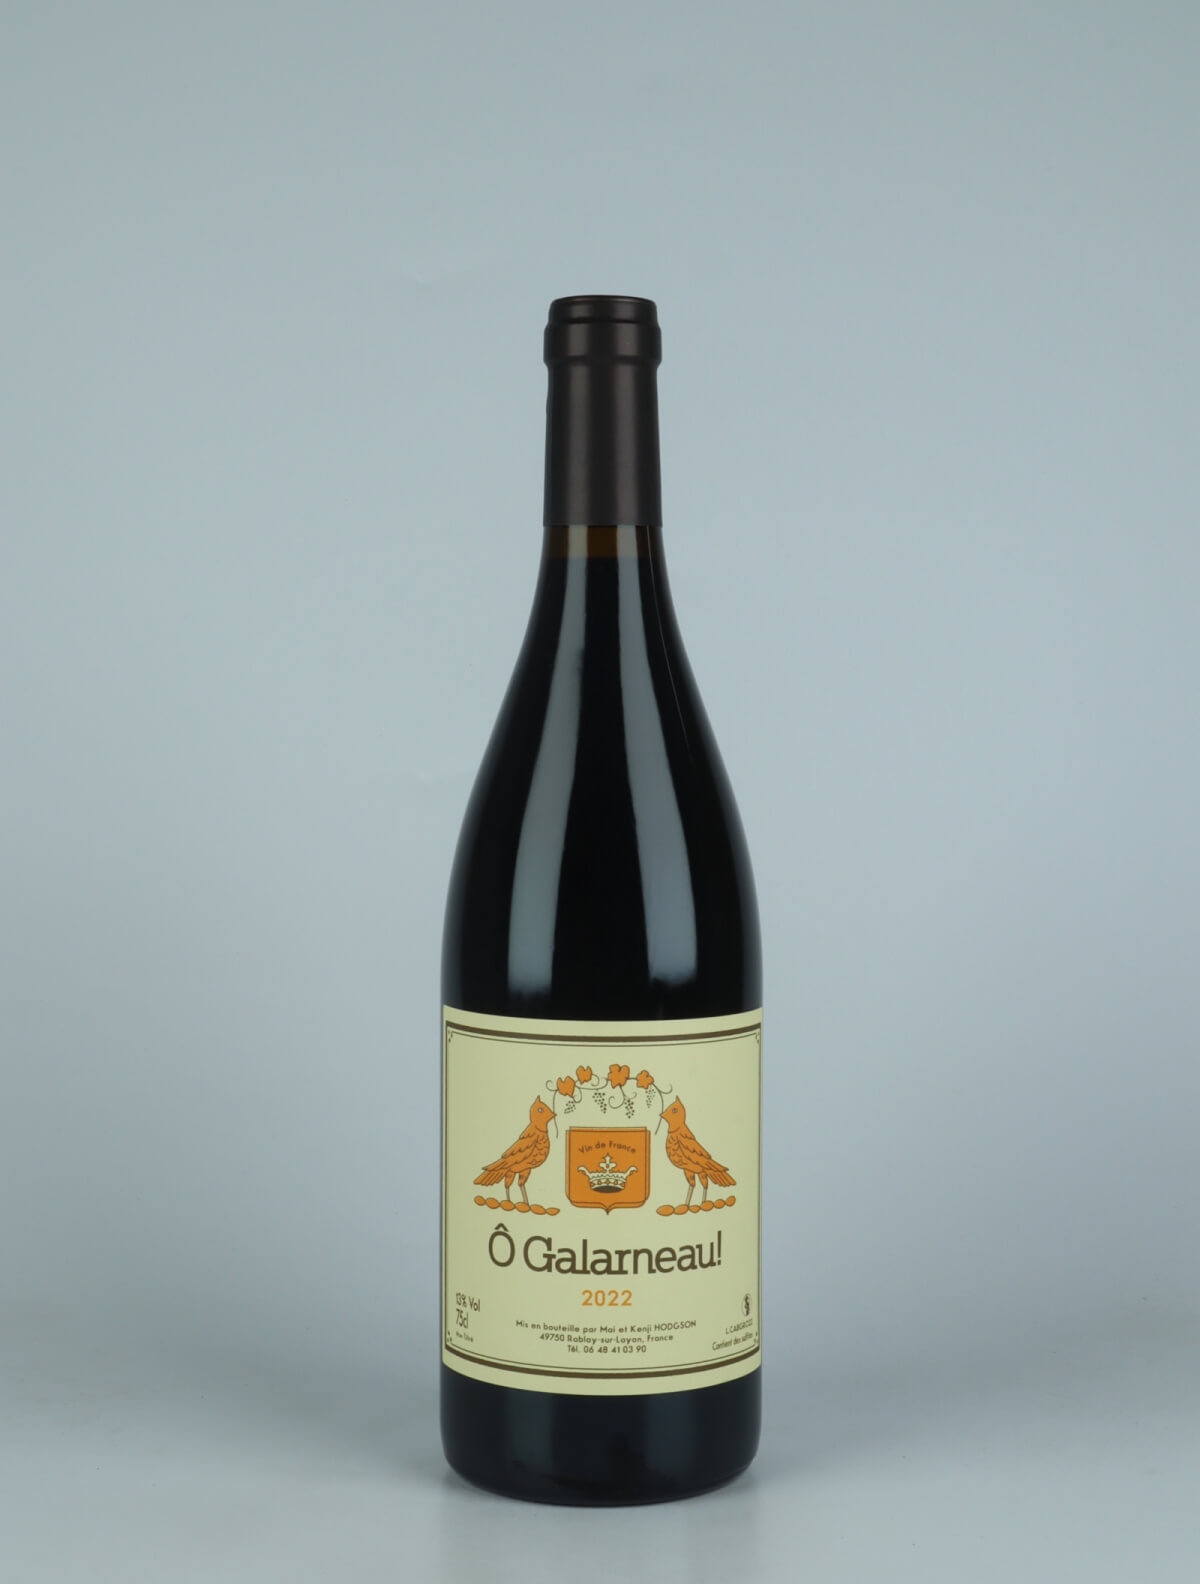 A bottle 2022 Ô Galarneau! Red wine from Mai et Kenji Hodgson, Loire in France